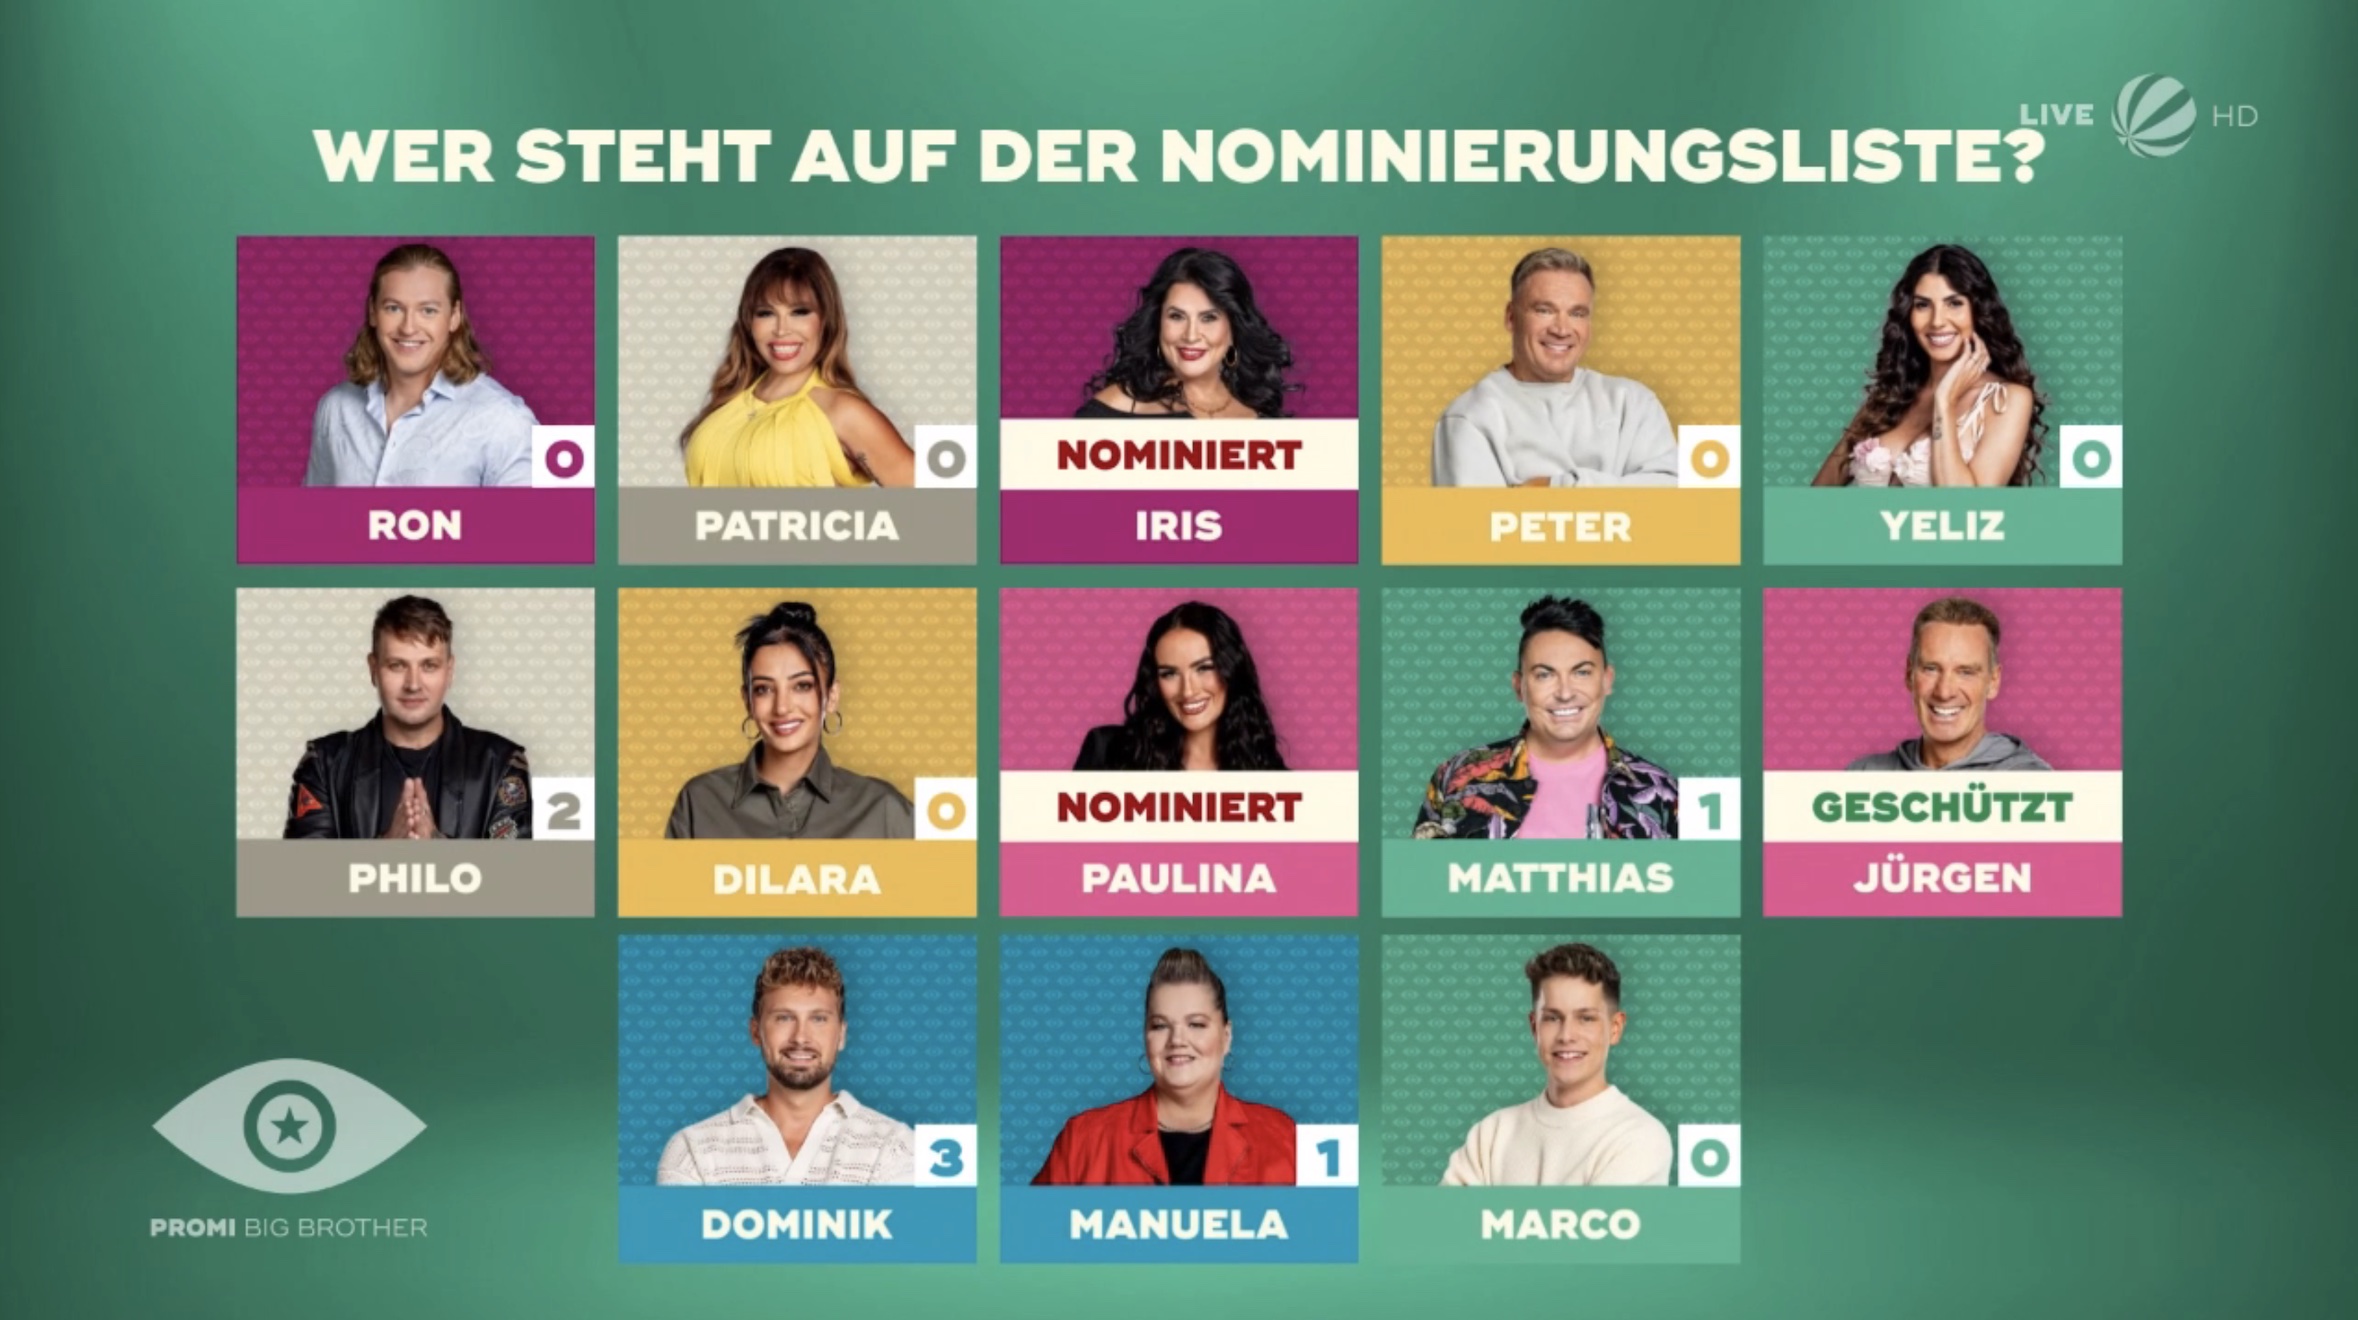 Promi Big Brother 2023 Offene Nominierung: Iris nominiert, Jürgen geschützt 3